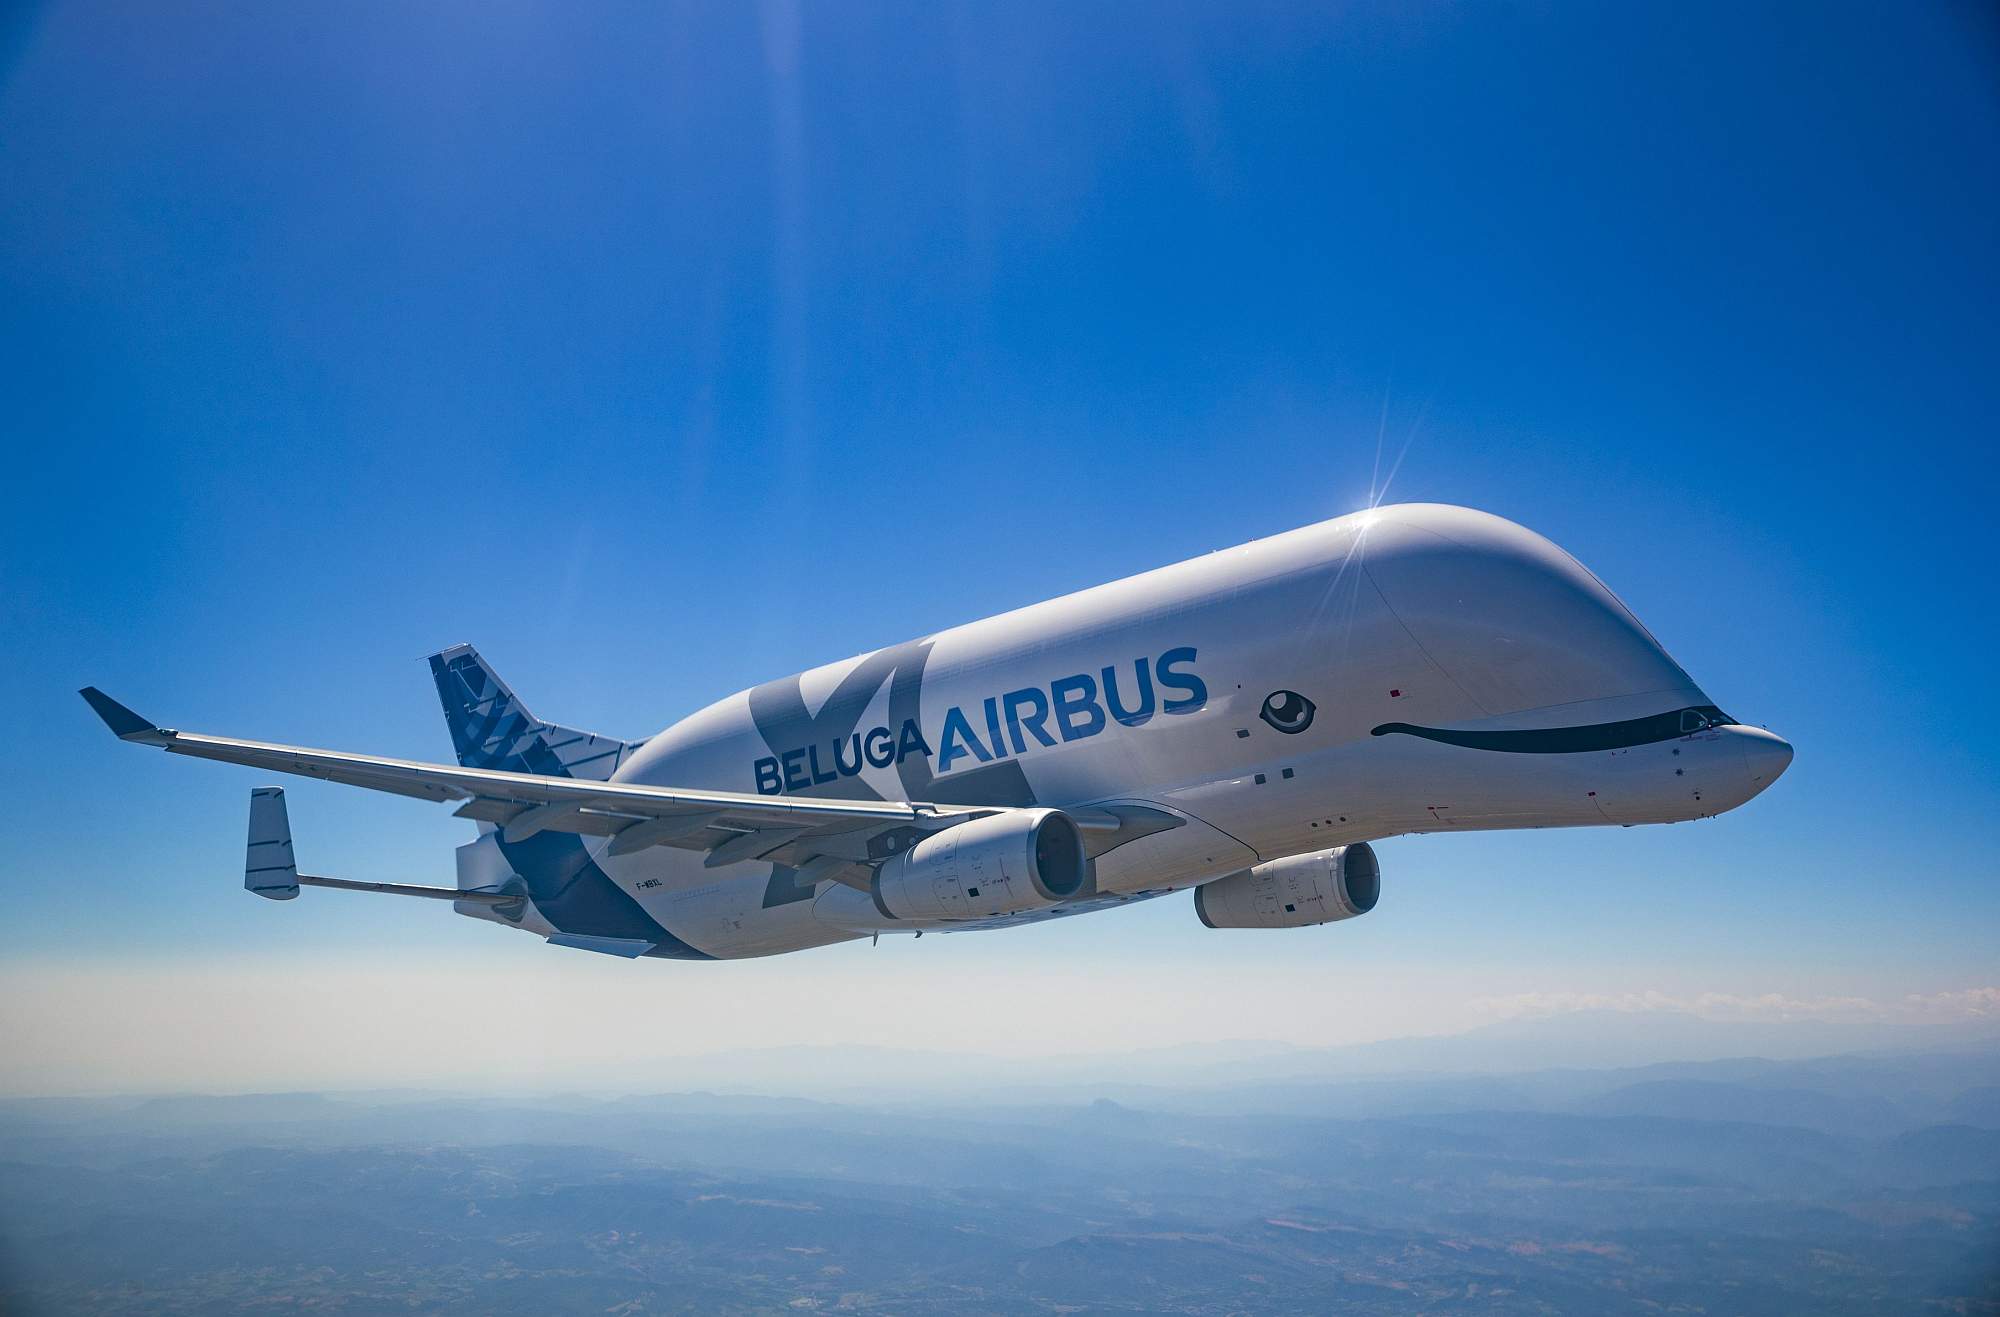 O quinto exemplar do exótico avião Beluga XL se prepara para voar pela  primeira vez